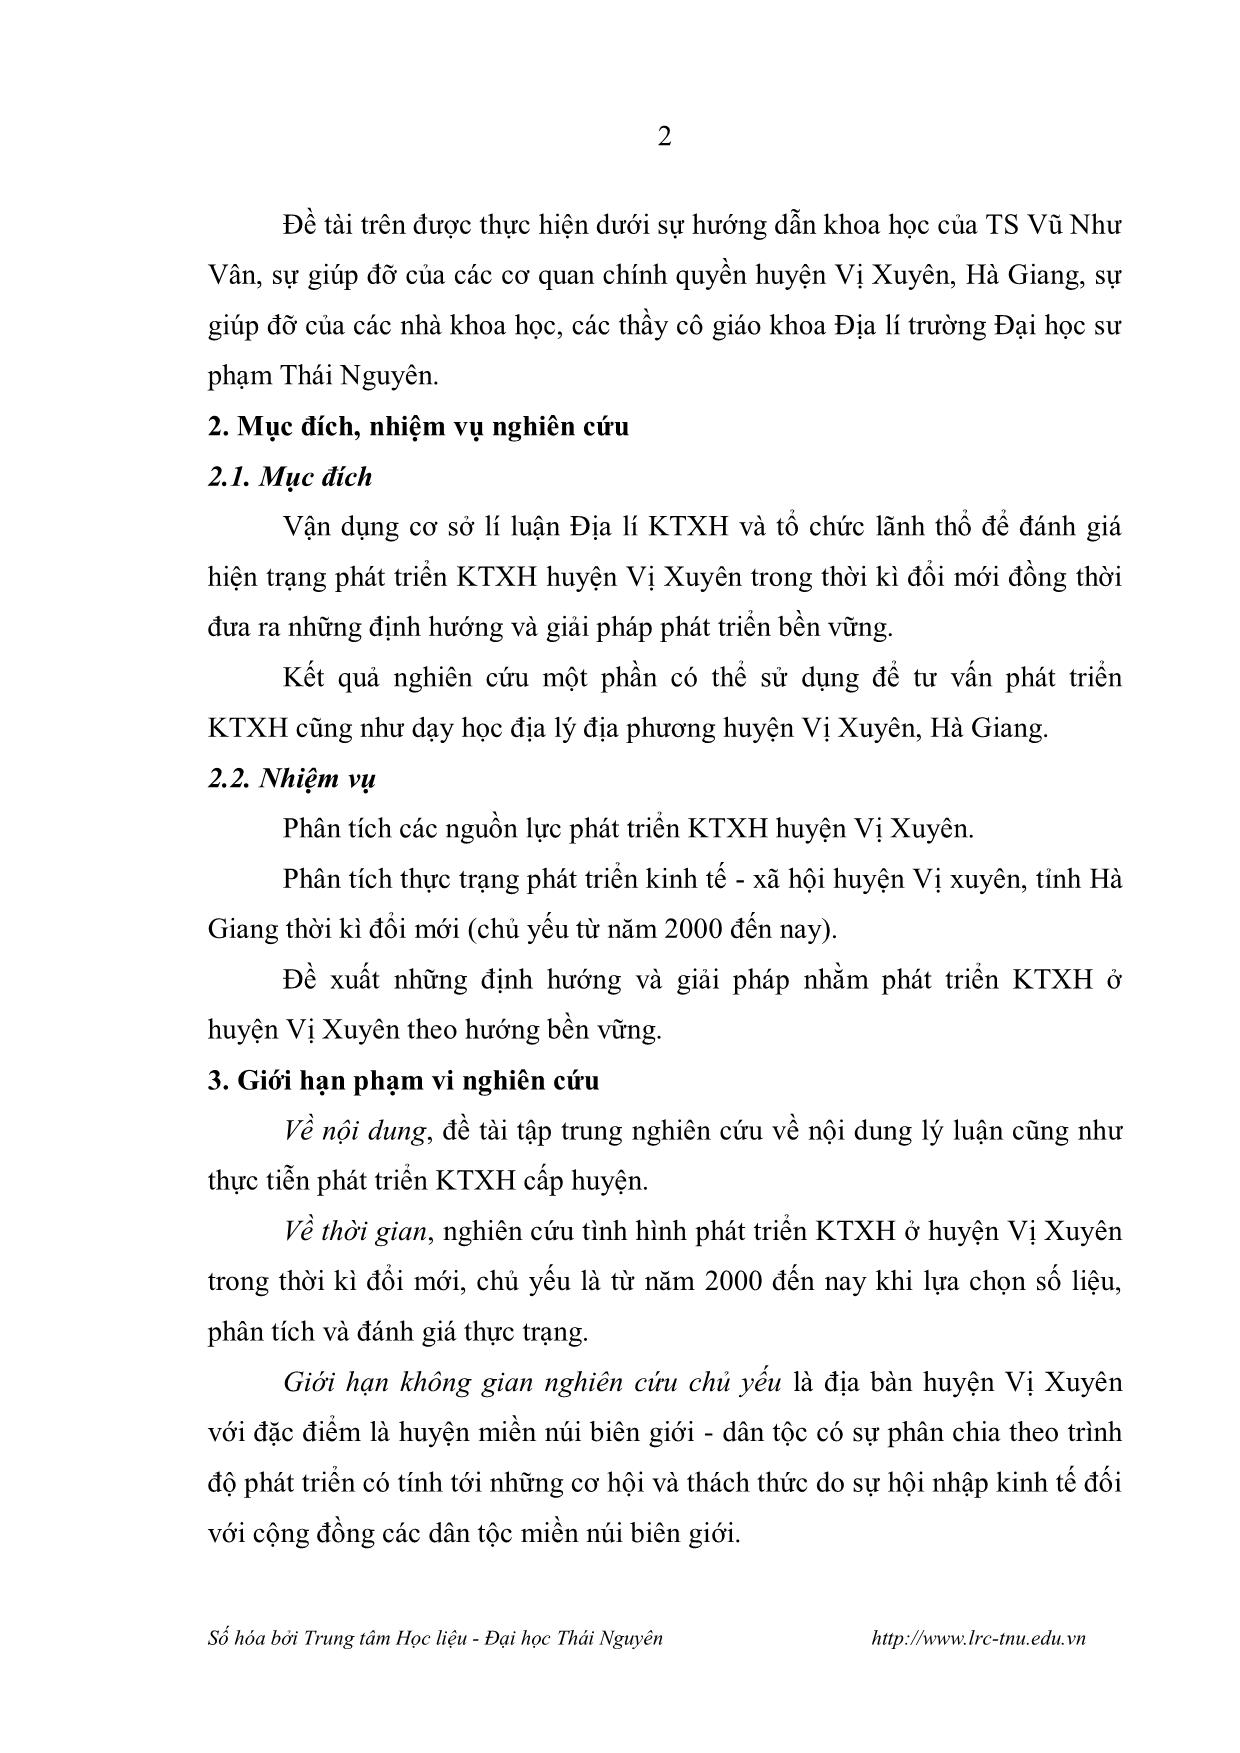 Luận văn Nghiên cứu phát triển Kinh tế - Xã hội huyện Vị Xuyên, Hà Giang thời kỳ đổi mới trang 4